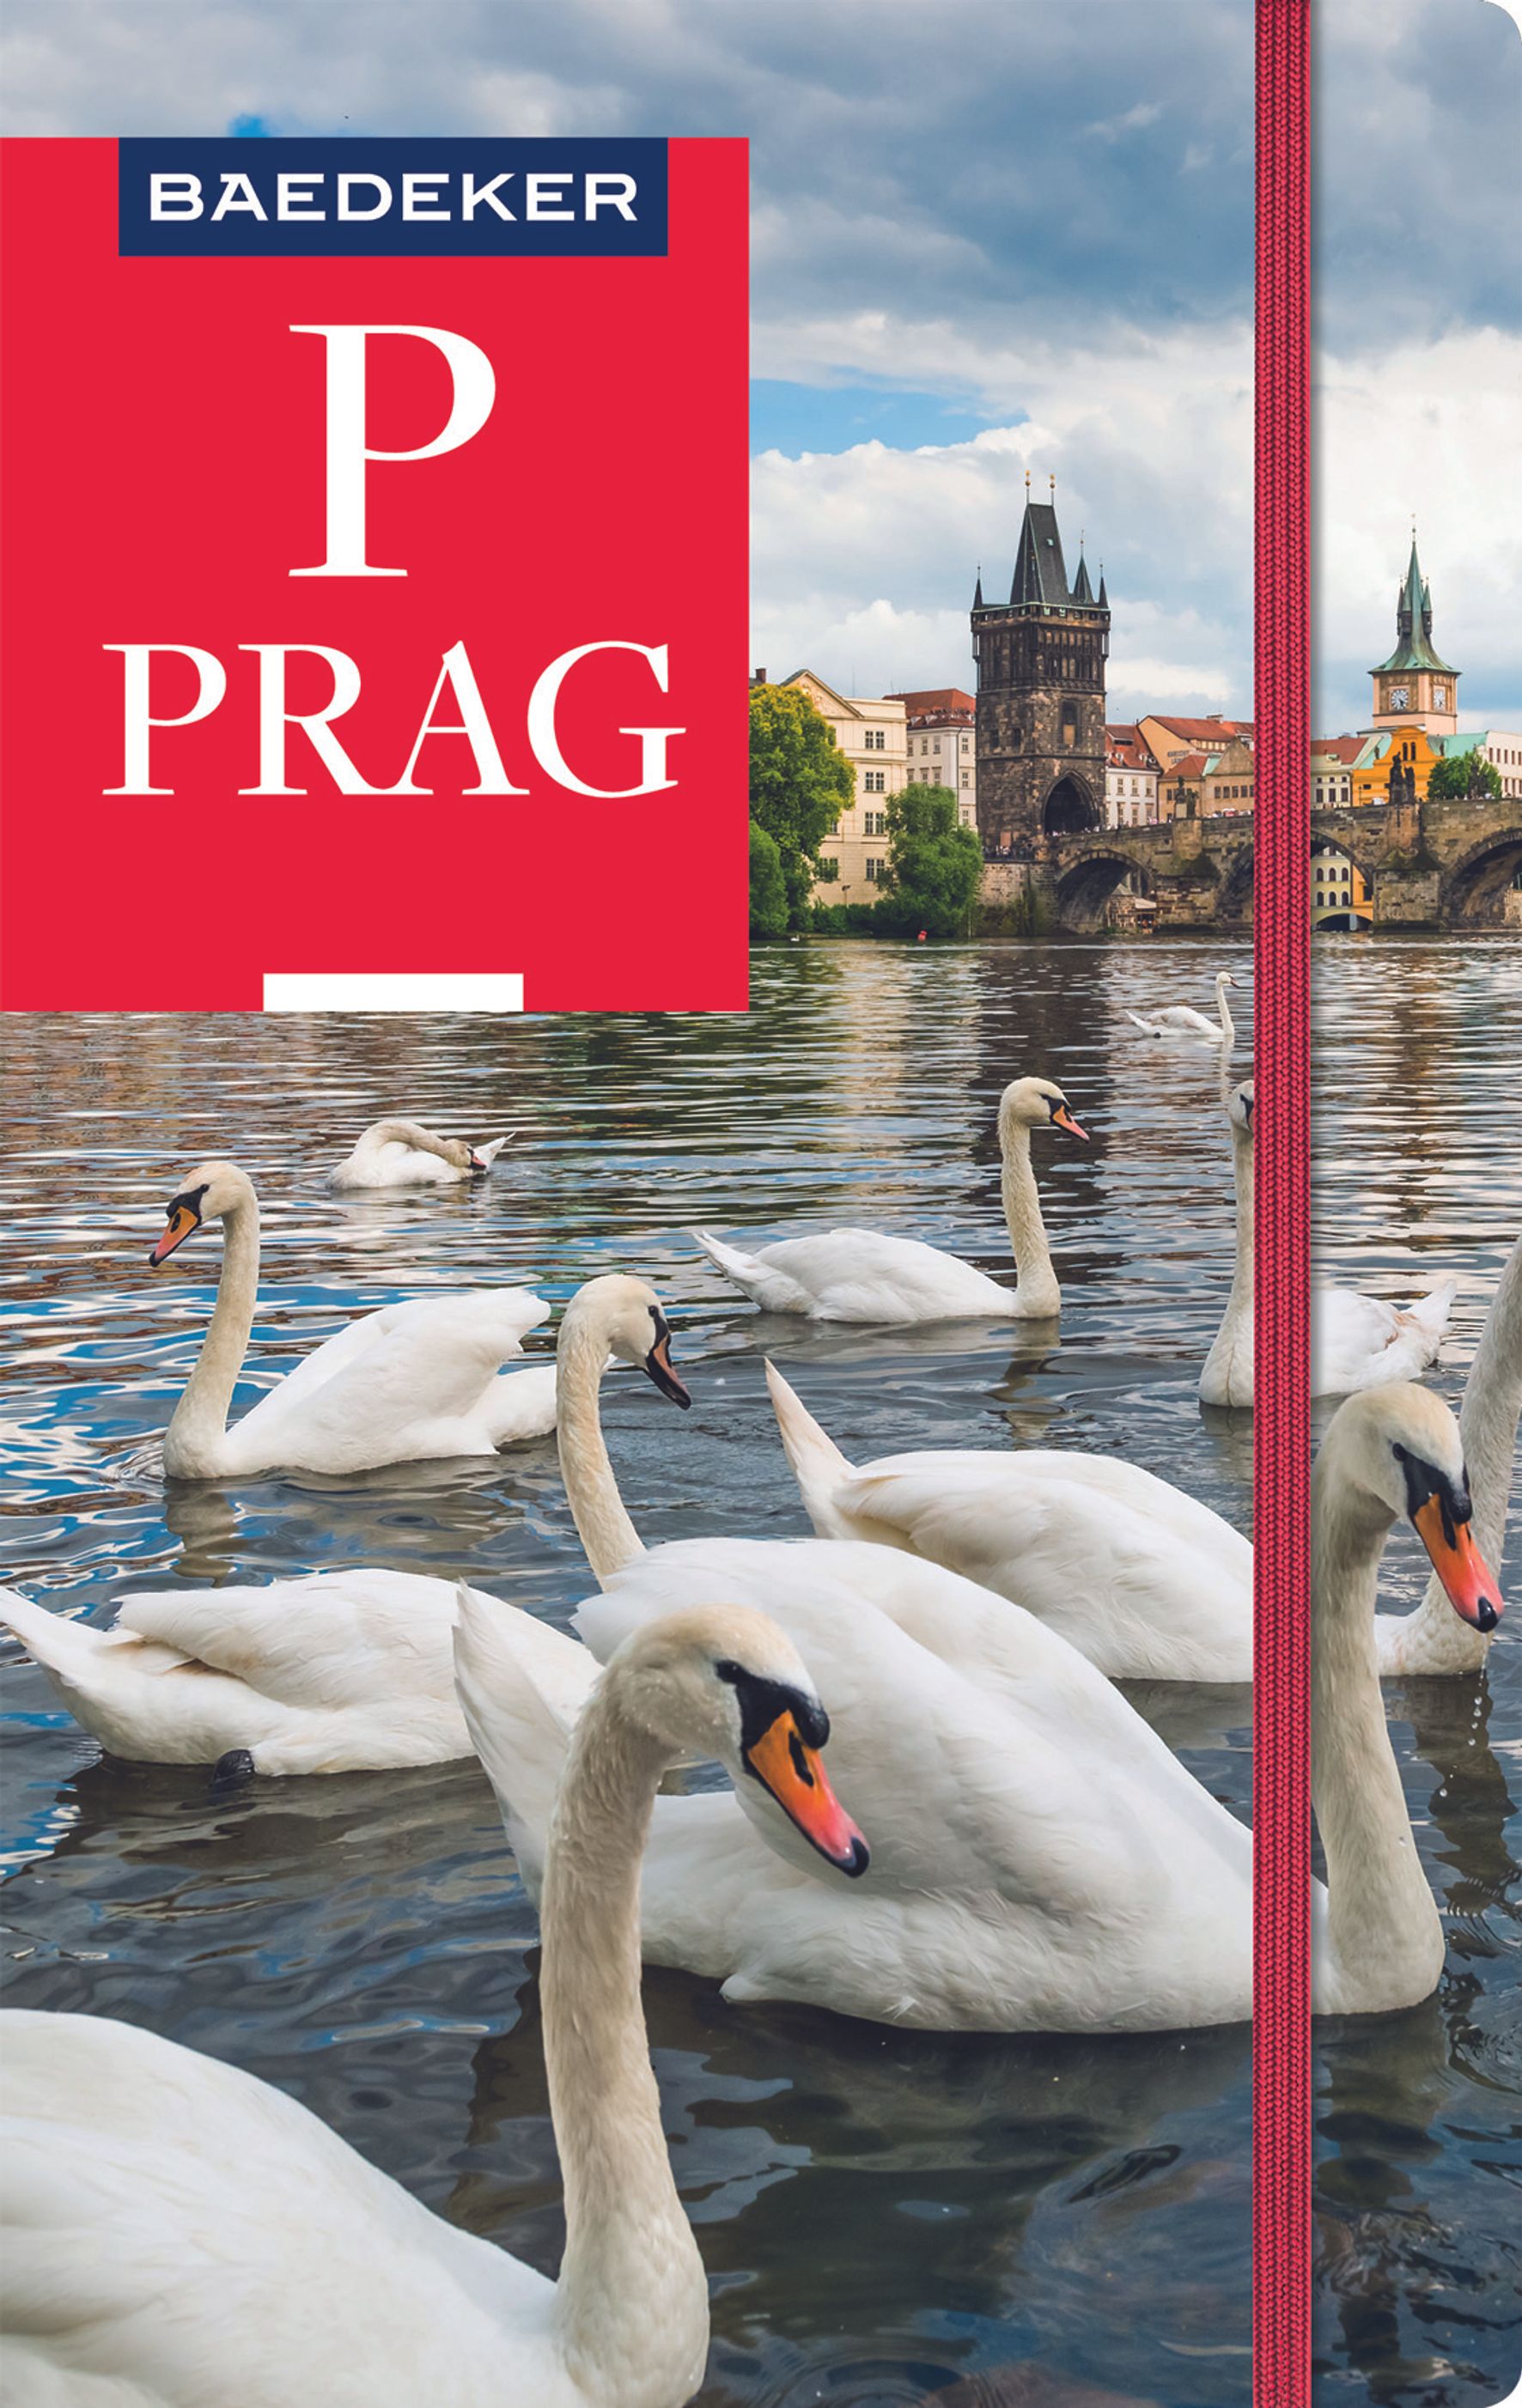 Baedeker Prag (eBook)